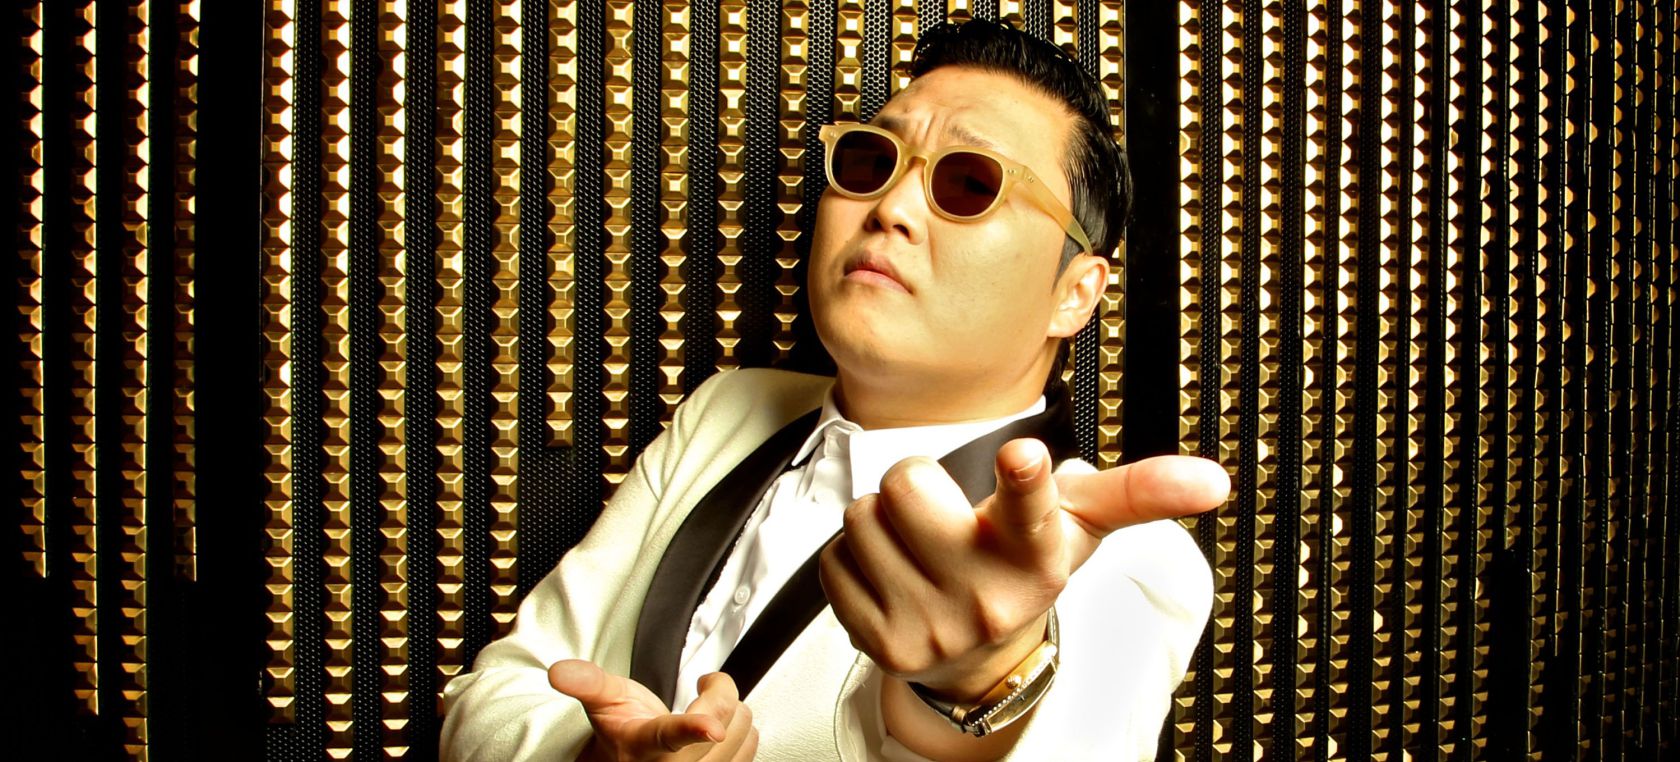 El fenómeno ‘Gangnam Style’ de PSY regresa 10 años después gracias a TikTok